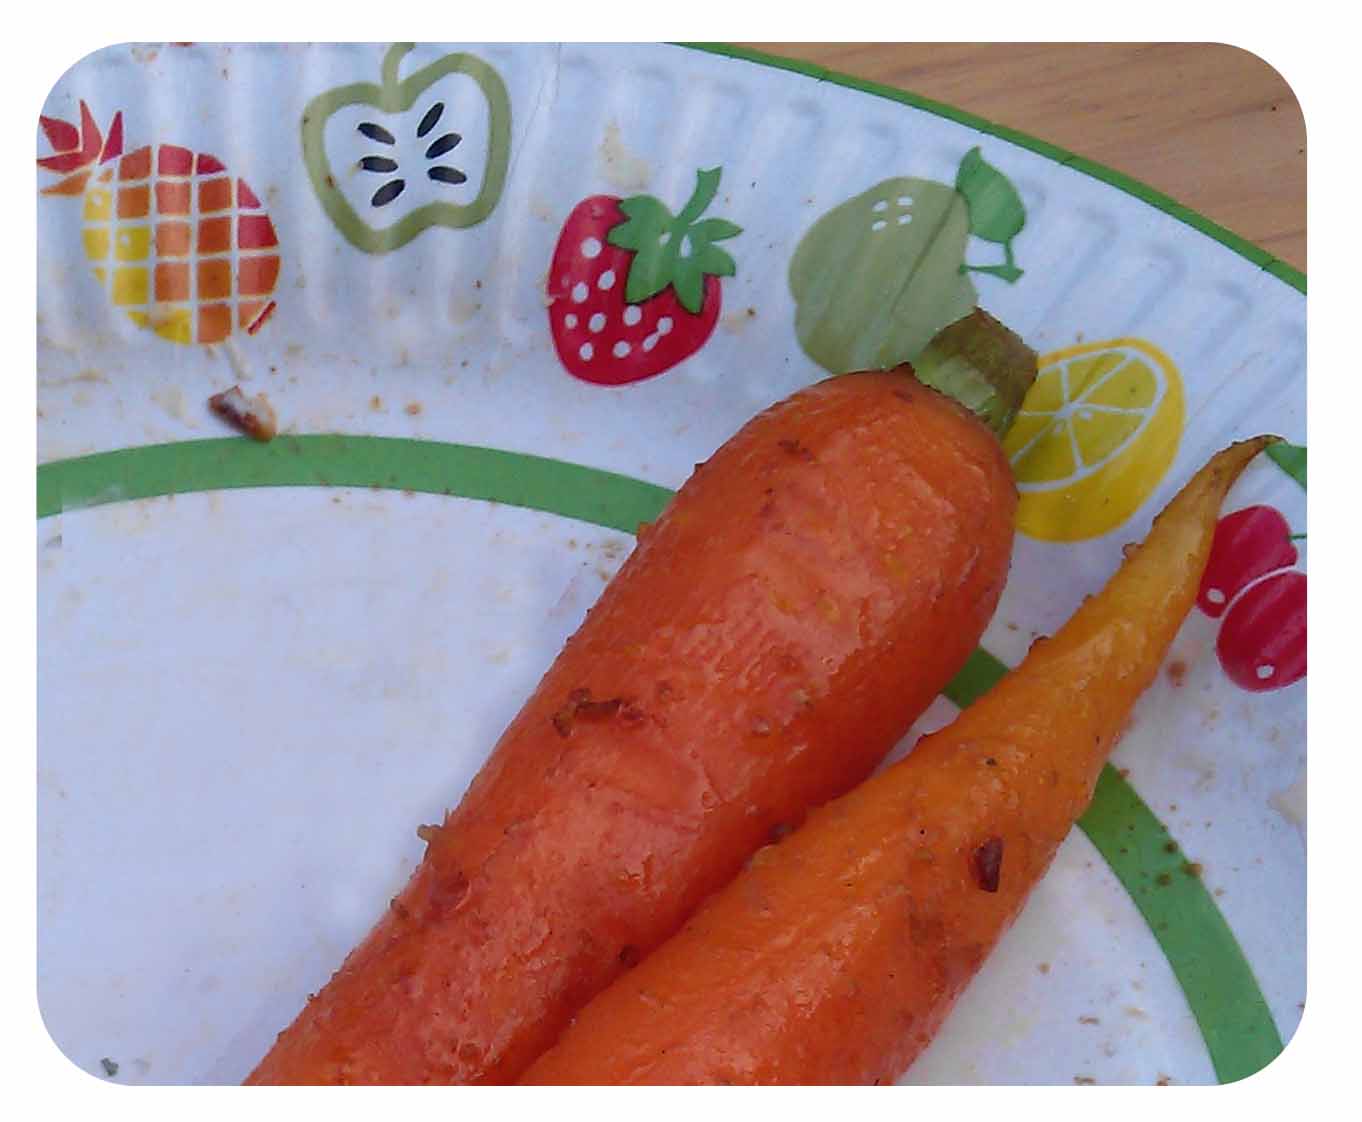 Carrot1